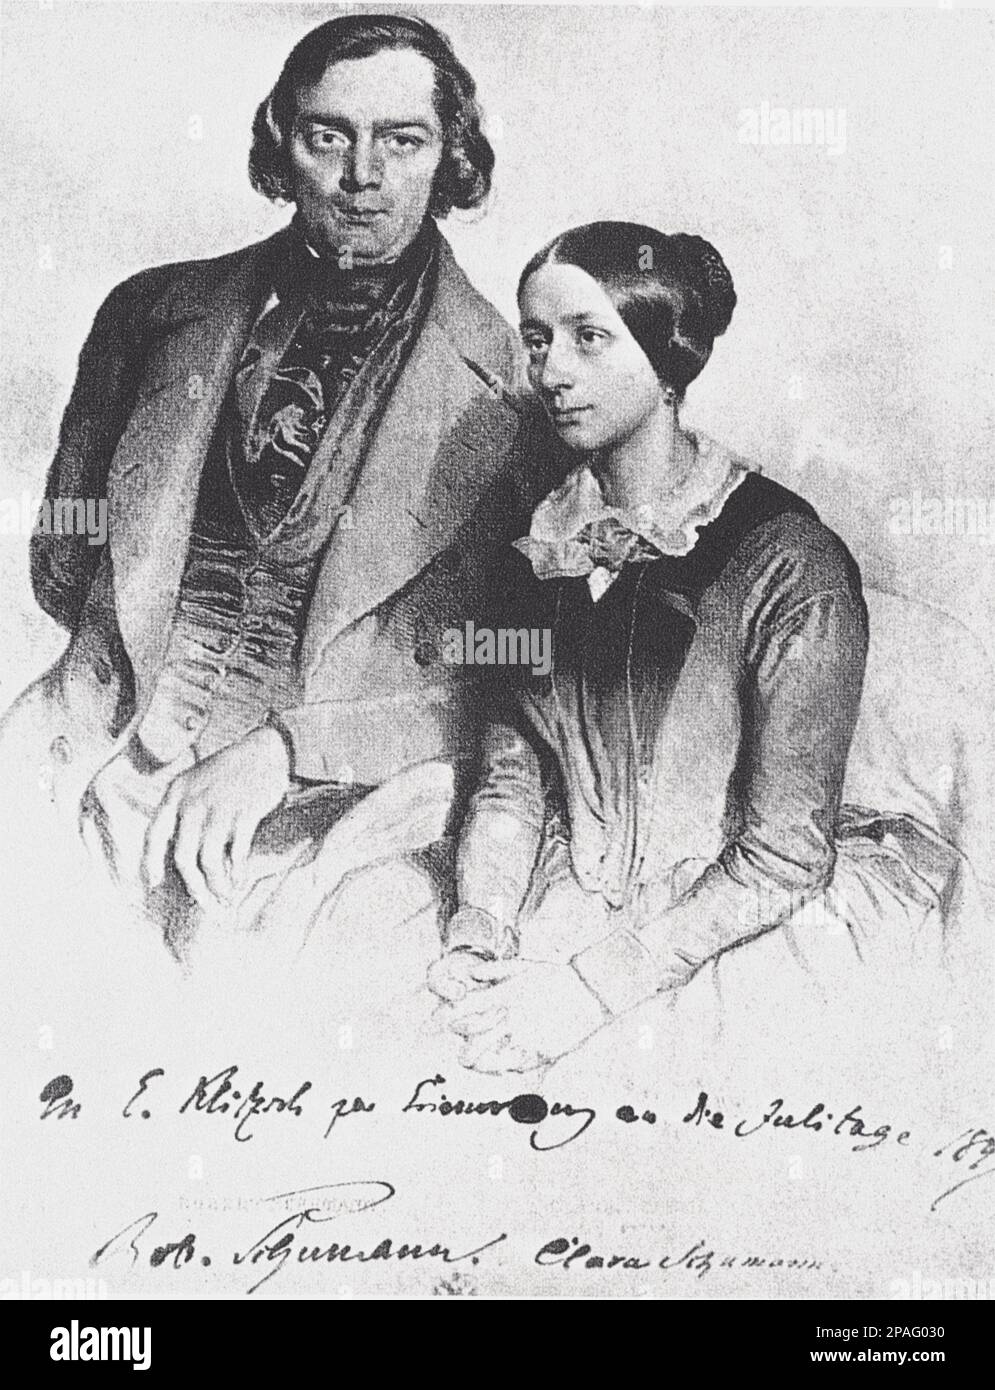 1847 : le célèbre compositeur allemand ROBERT SCHUMANN ( 1810 - 1856 ) et sa femme CLARA Wieck ( 1819 - 1896 ), Les amis de Johannes Brahms - MUSICA CLASSICA - CLASSIQUE - COMPOSITORE - MUSICISTA - portrait - ritrato - profilo - profil - incisione - gravure - marito e moglie --- ARCHIVIO GBB Banque D'Images